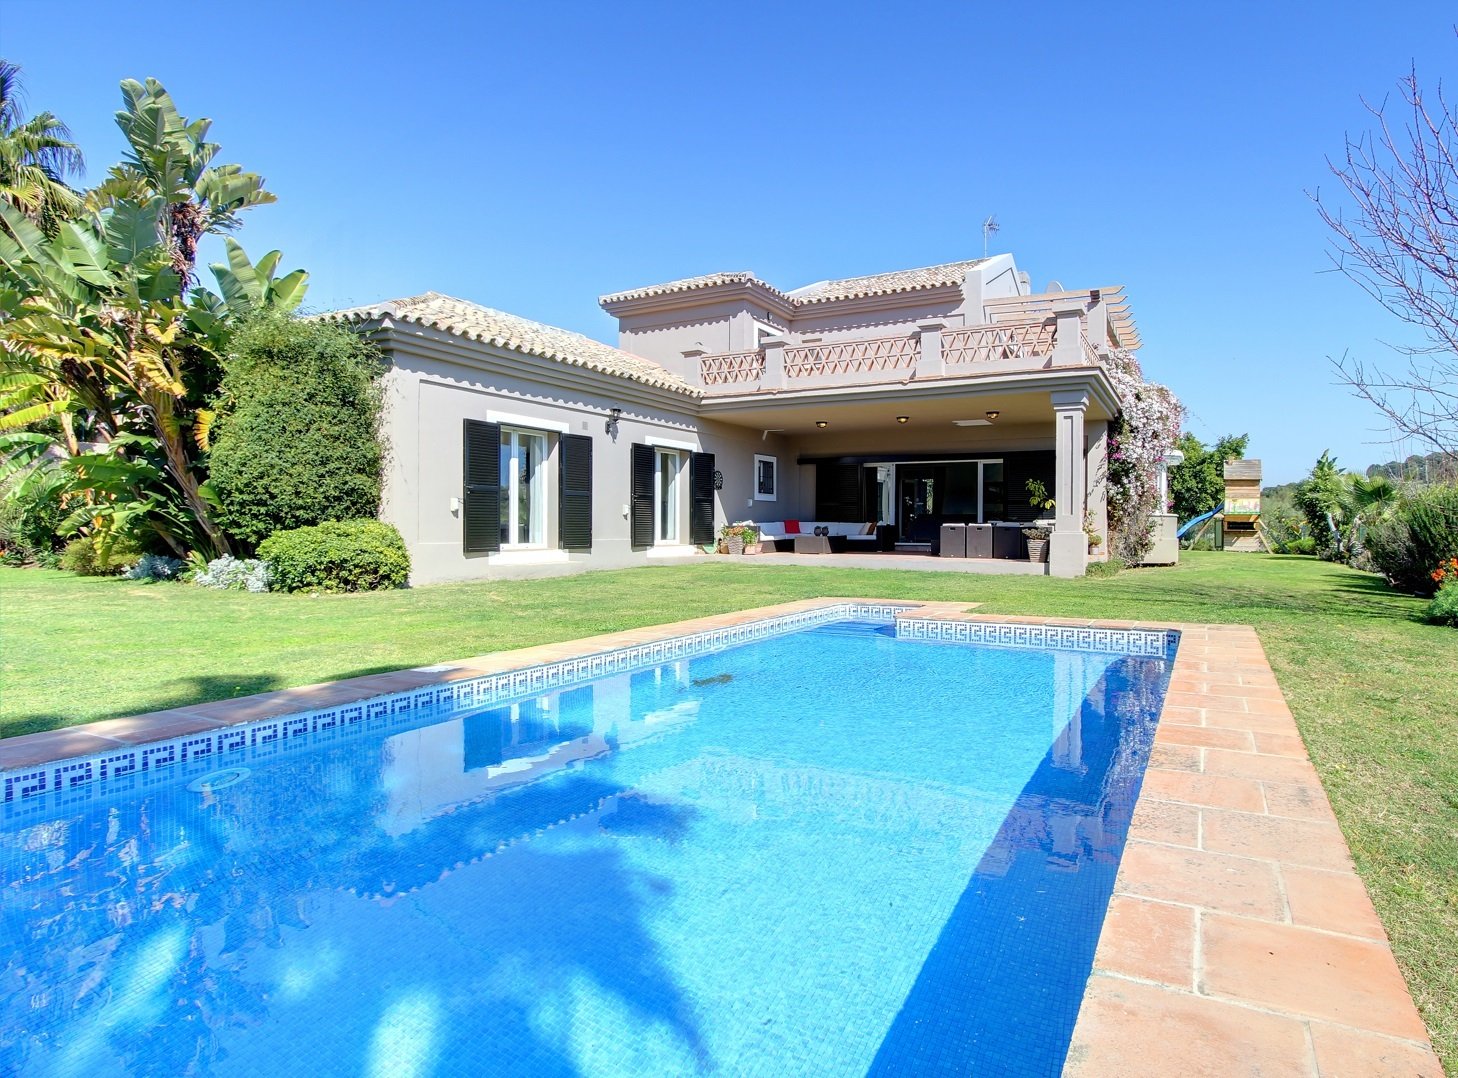 Villa For Sale In El Paraiso, Marbella In Marbella, Andalusia, Spain ...